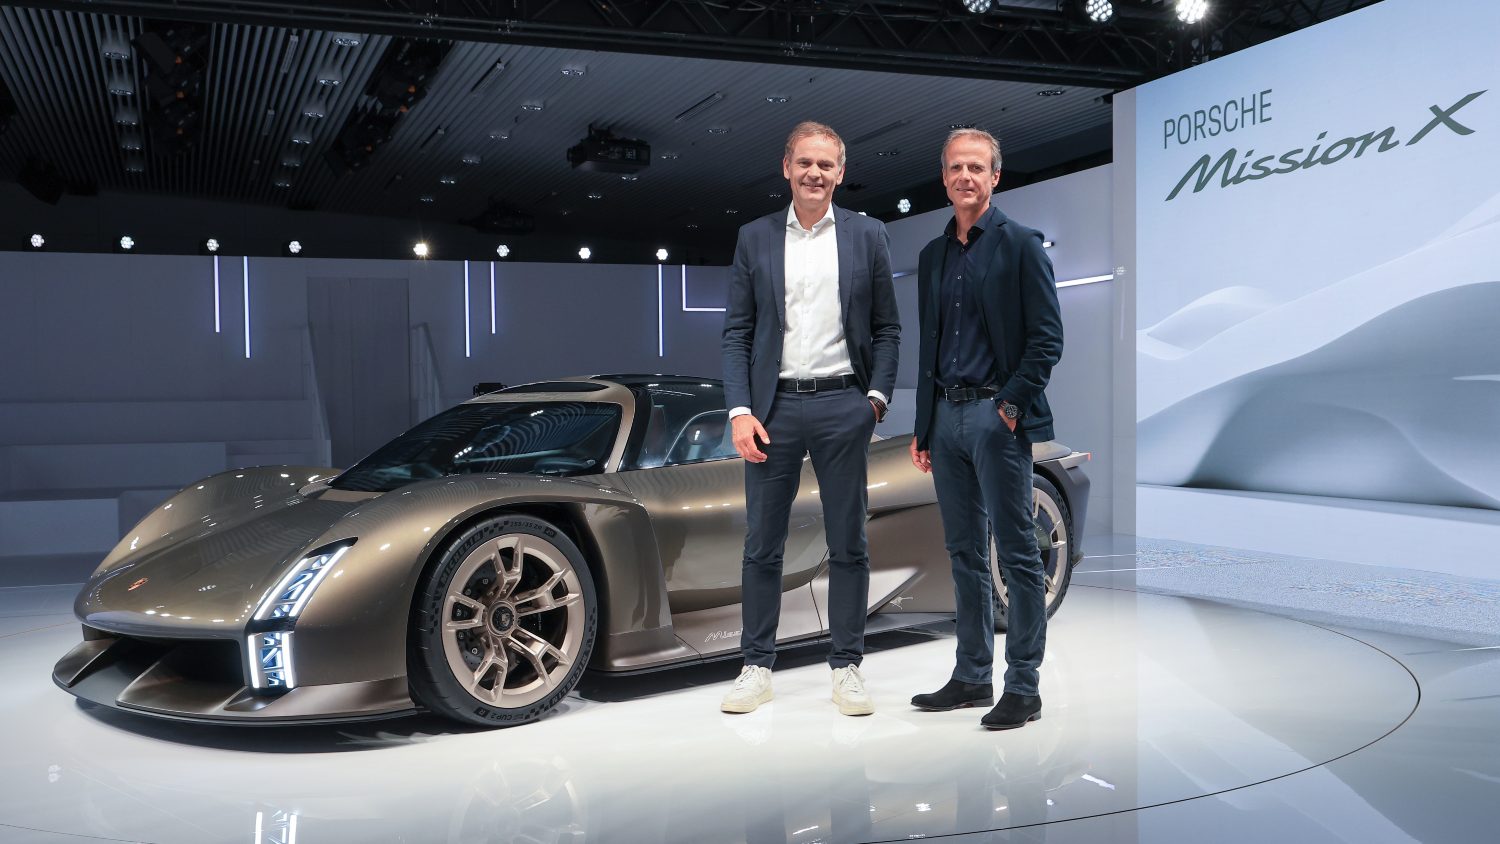 O novo Porsche MissionX Concept, apresentado pelo CEO da Porsche, Oliver Blume (esq.), e o director de Design, Michael Mauer